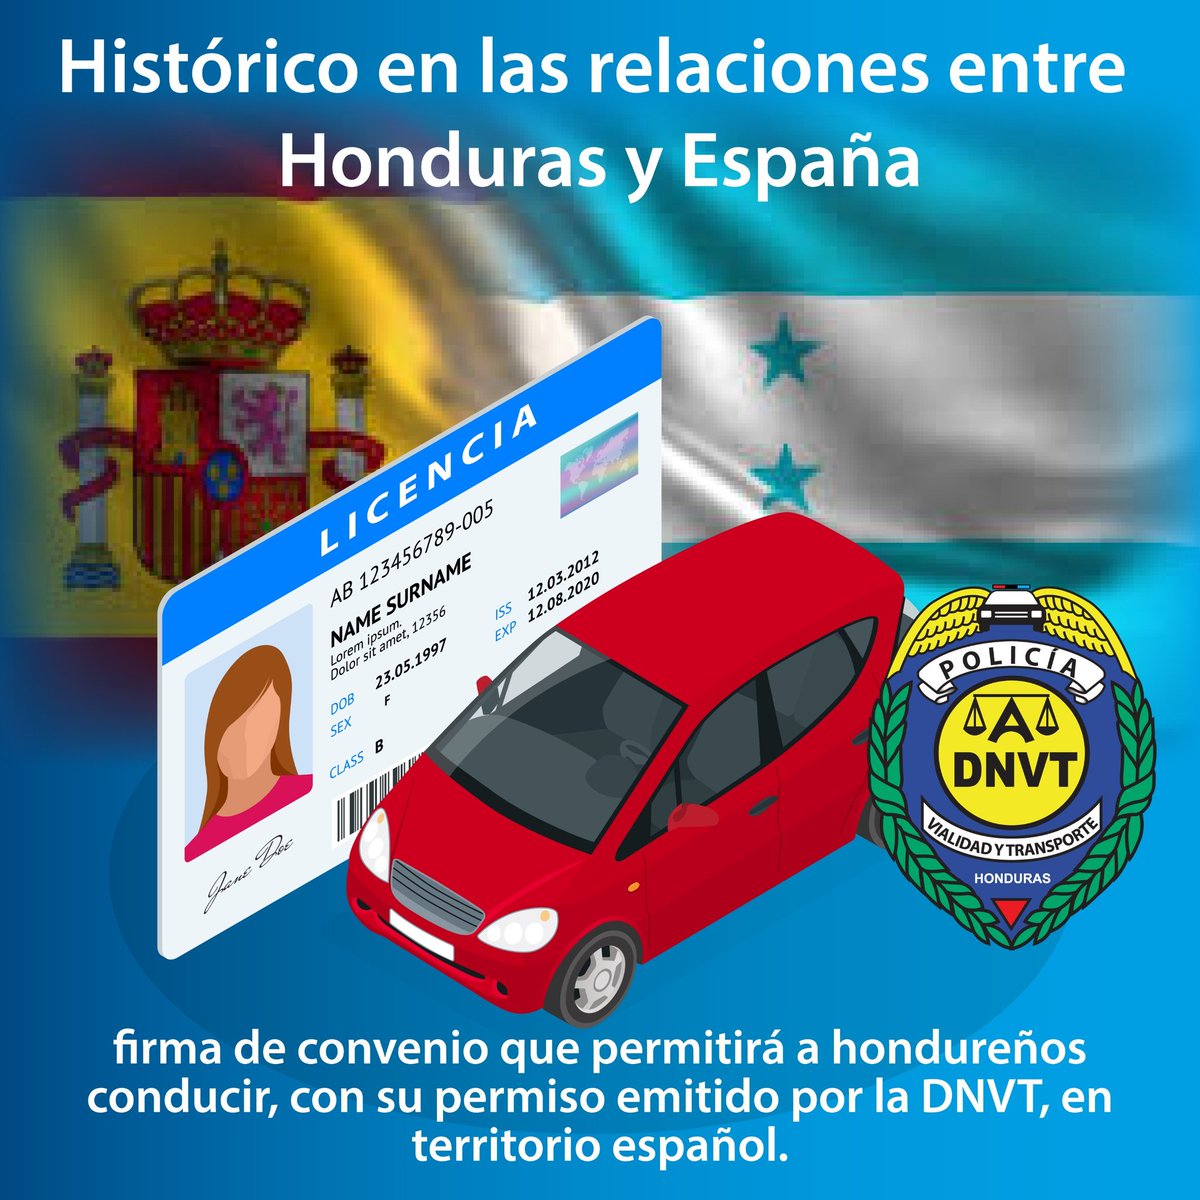 Histórico convenio para homologar permisos de conducir emitidos por @dnvt_honduras de #Honduras beneficiando a más de 180 mil hondureños en España un paso crucial hacia la integración y movilidad de los ciudadanos hondureños en #España @XiomaraCastroZ @Canal8_hn @gobprensaHN